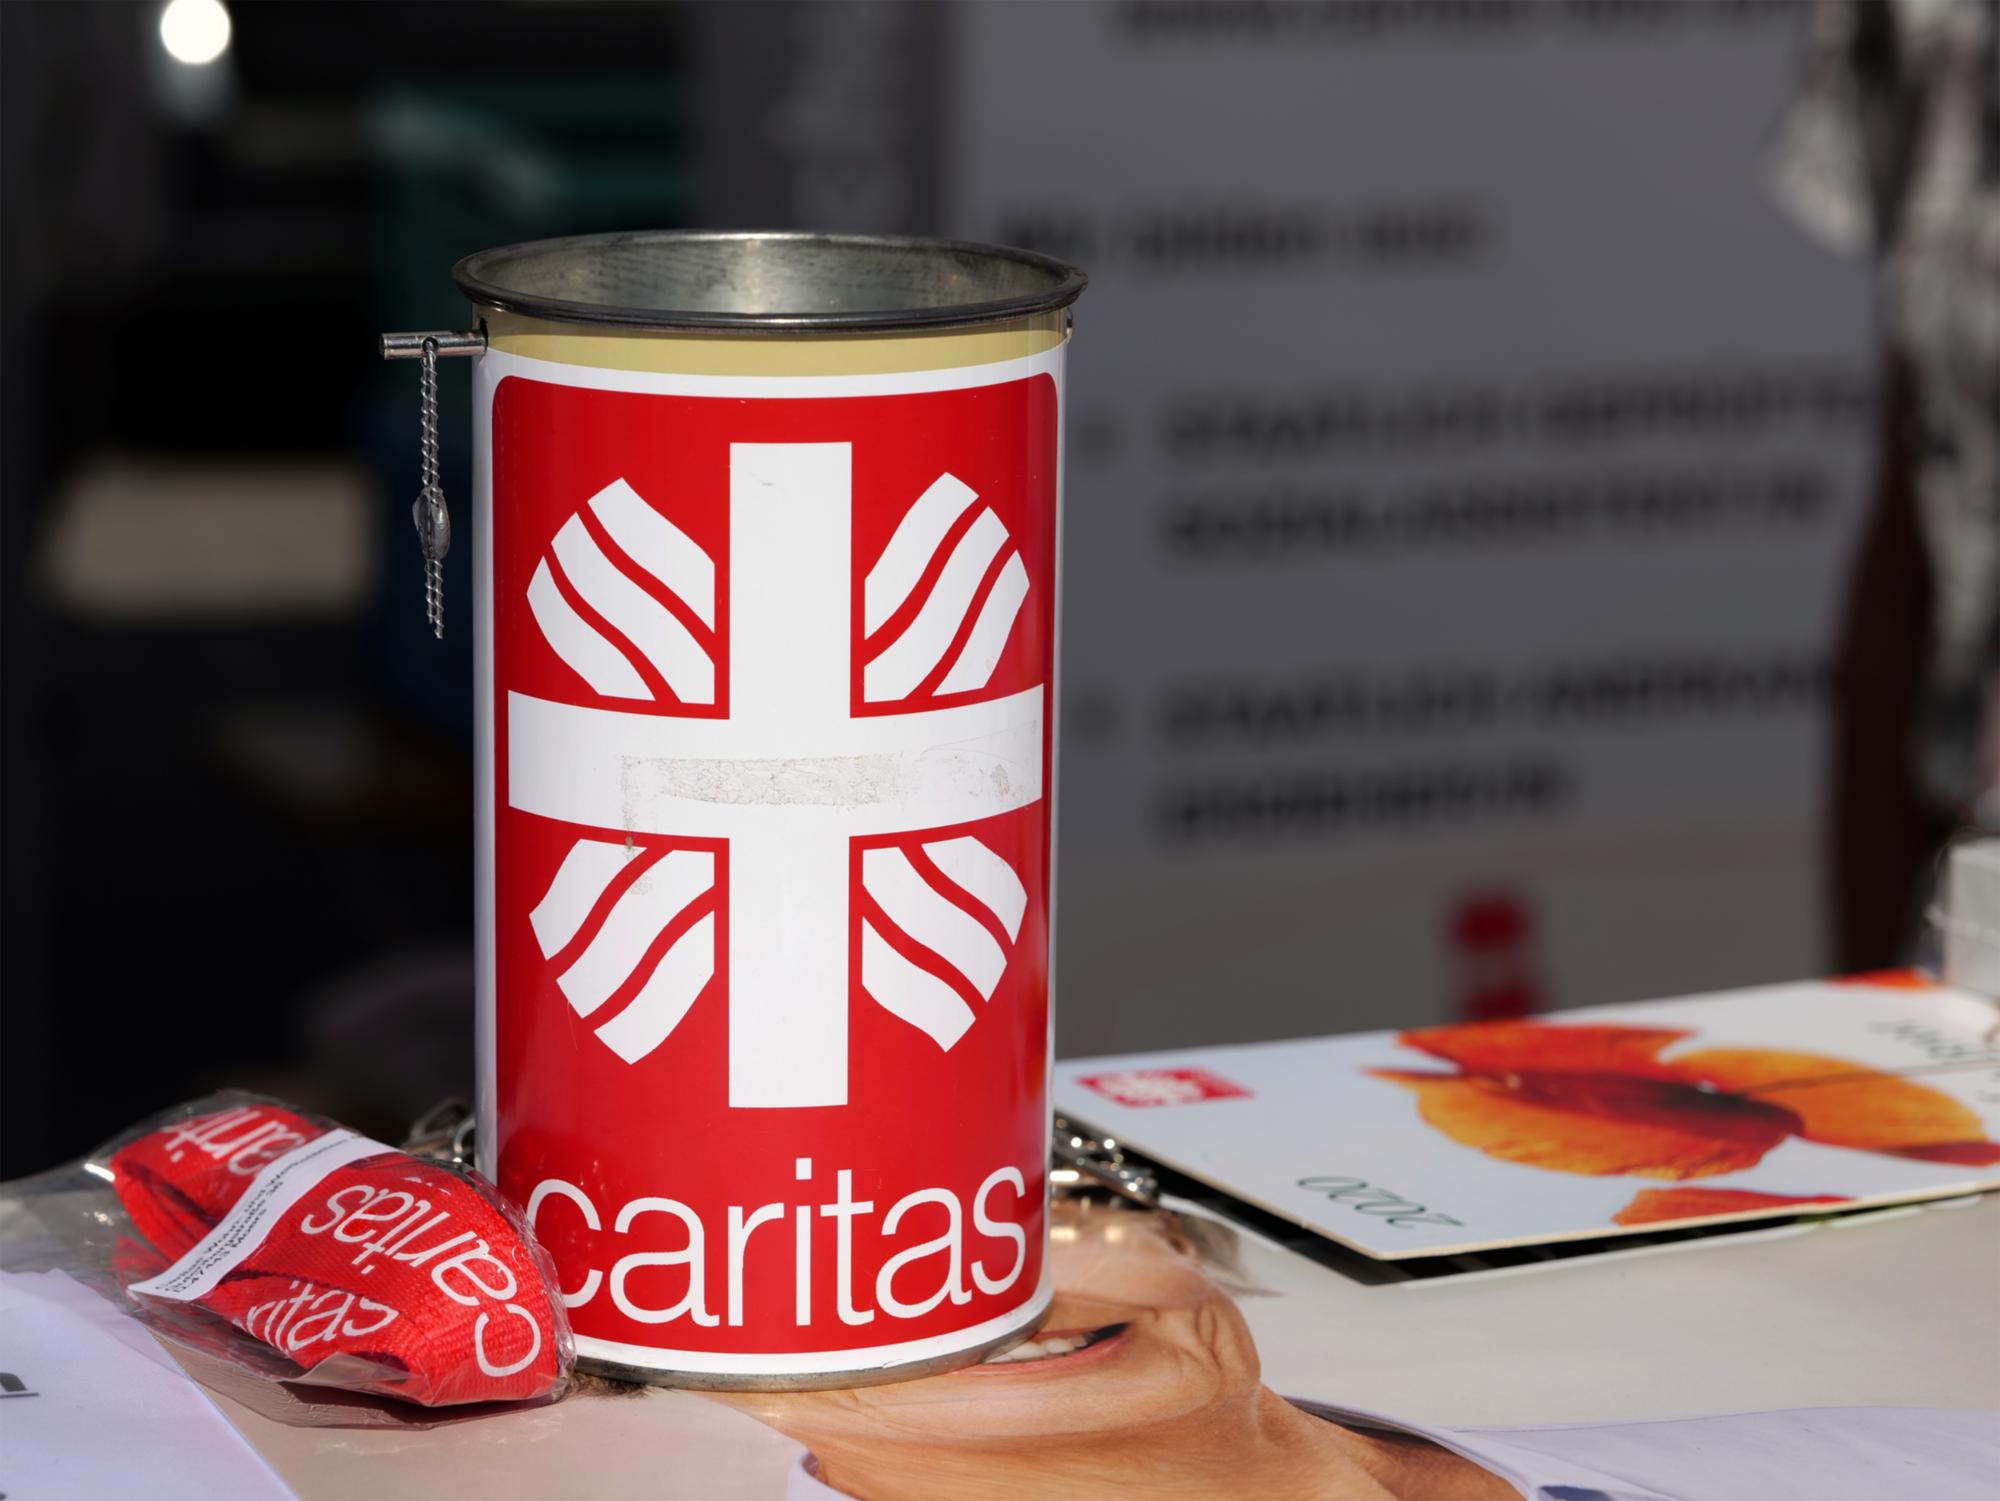 Caritas Spendendose